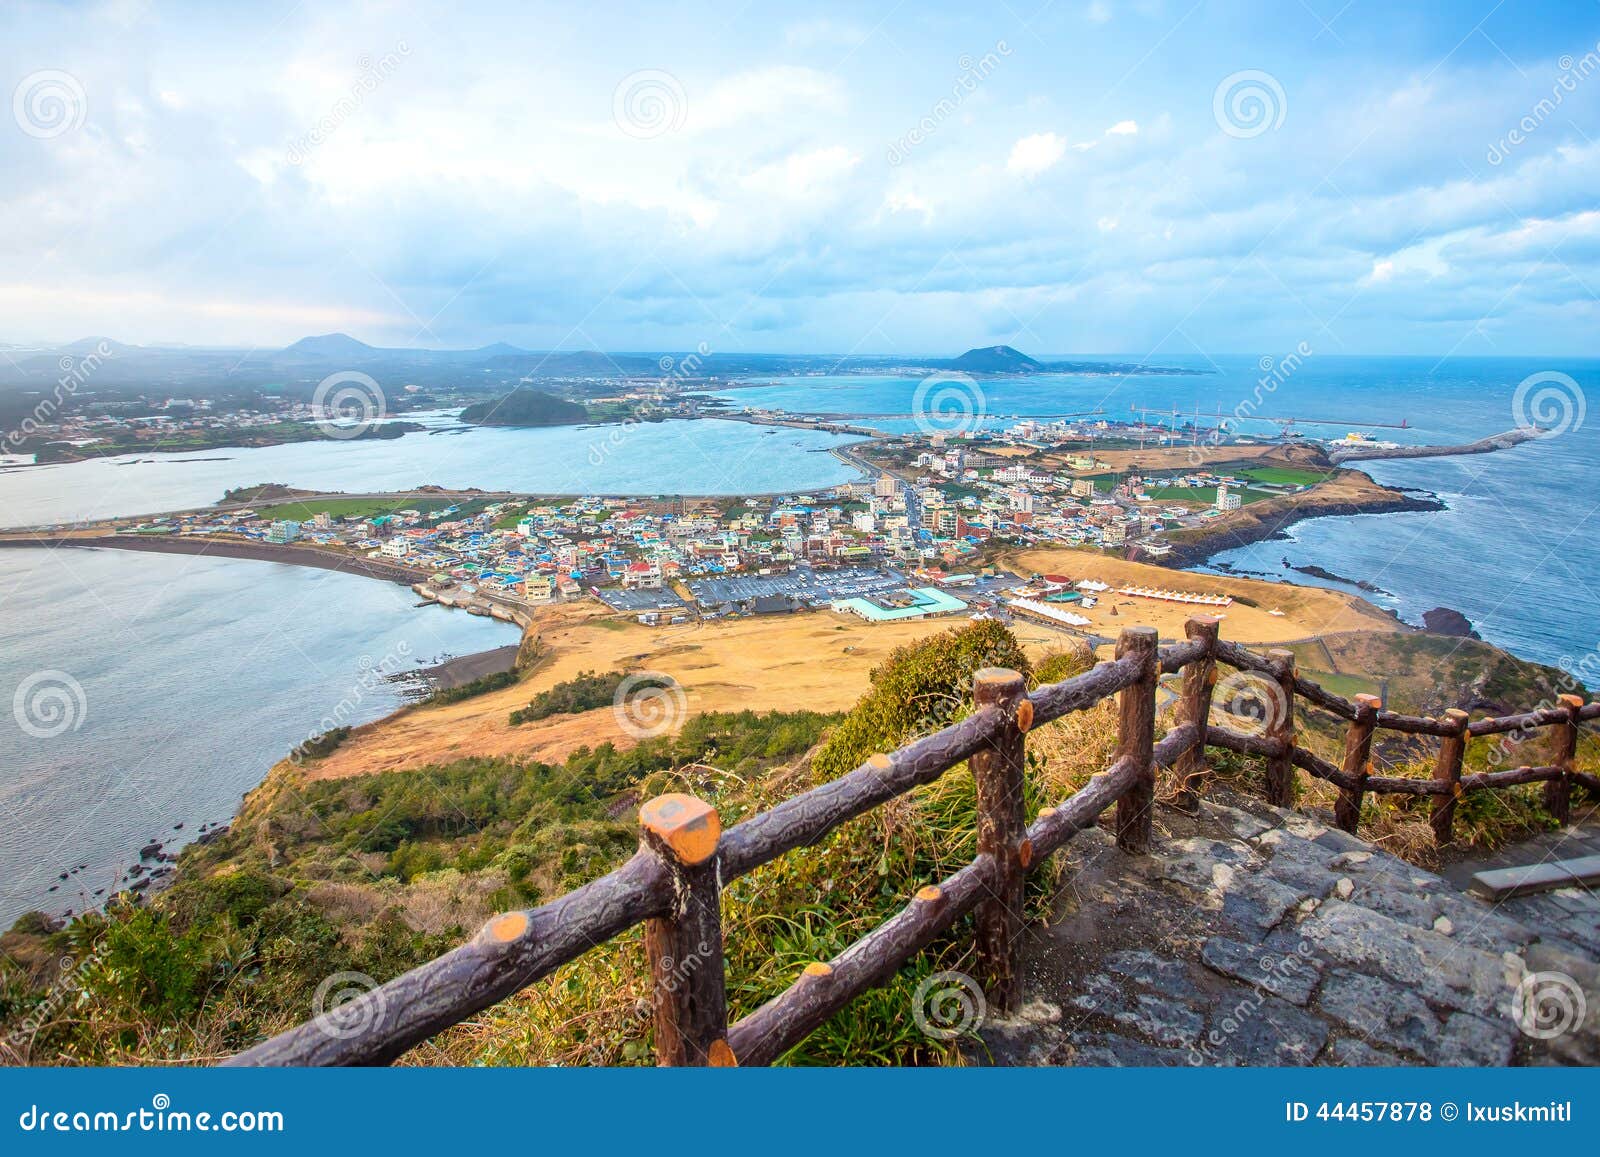 Jeju Do Beach Island, South Korea Stock Photo  Image: 44457878